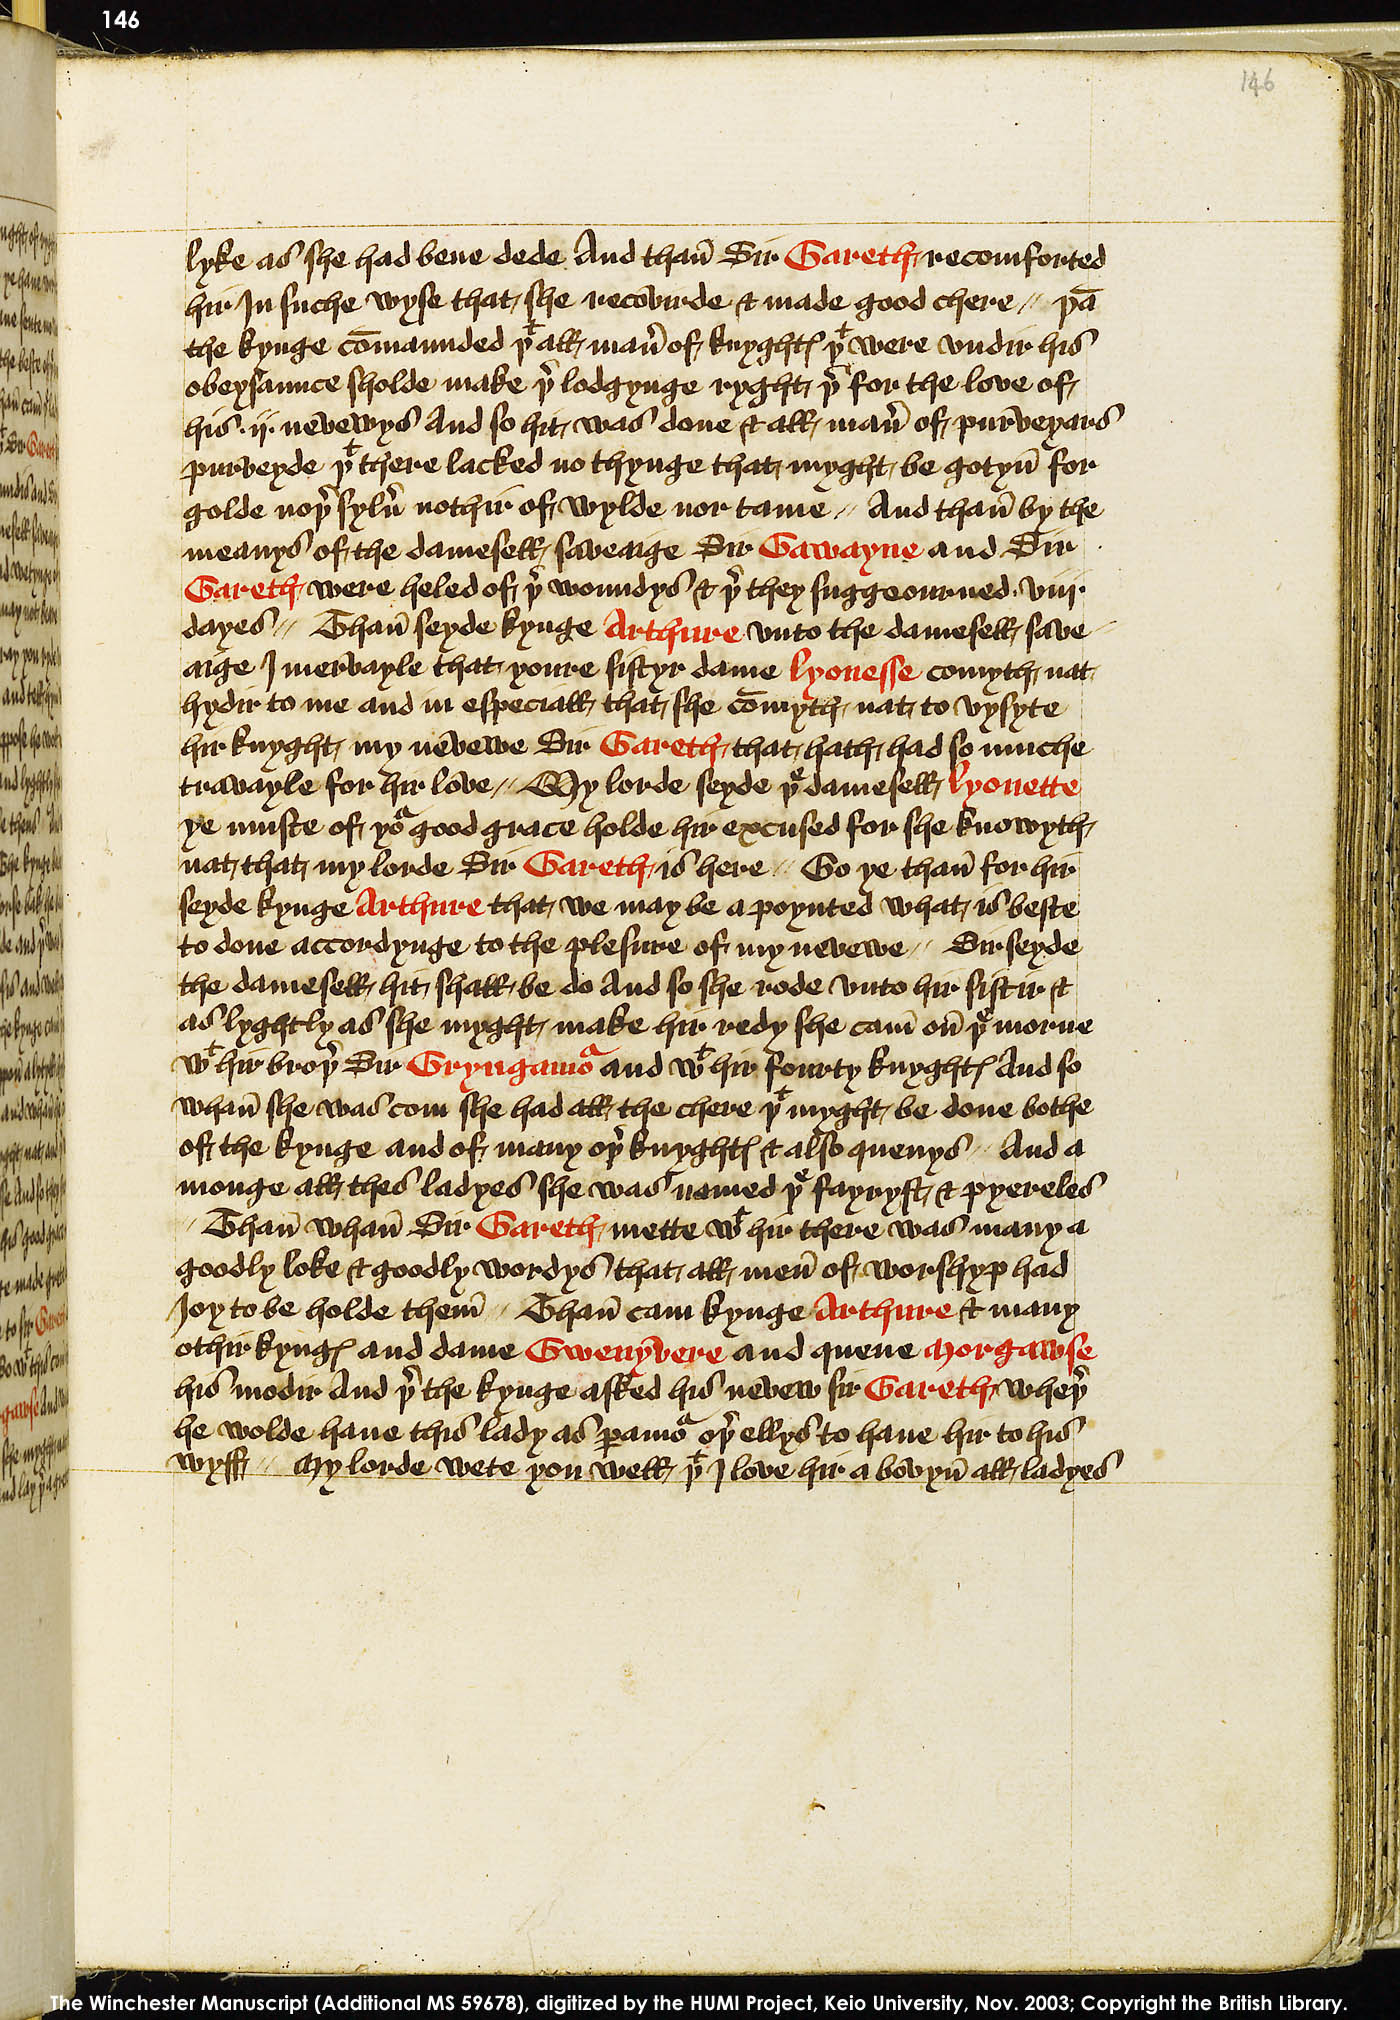 Folio 146r